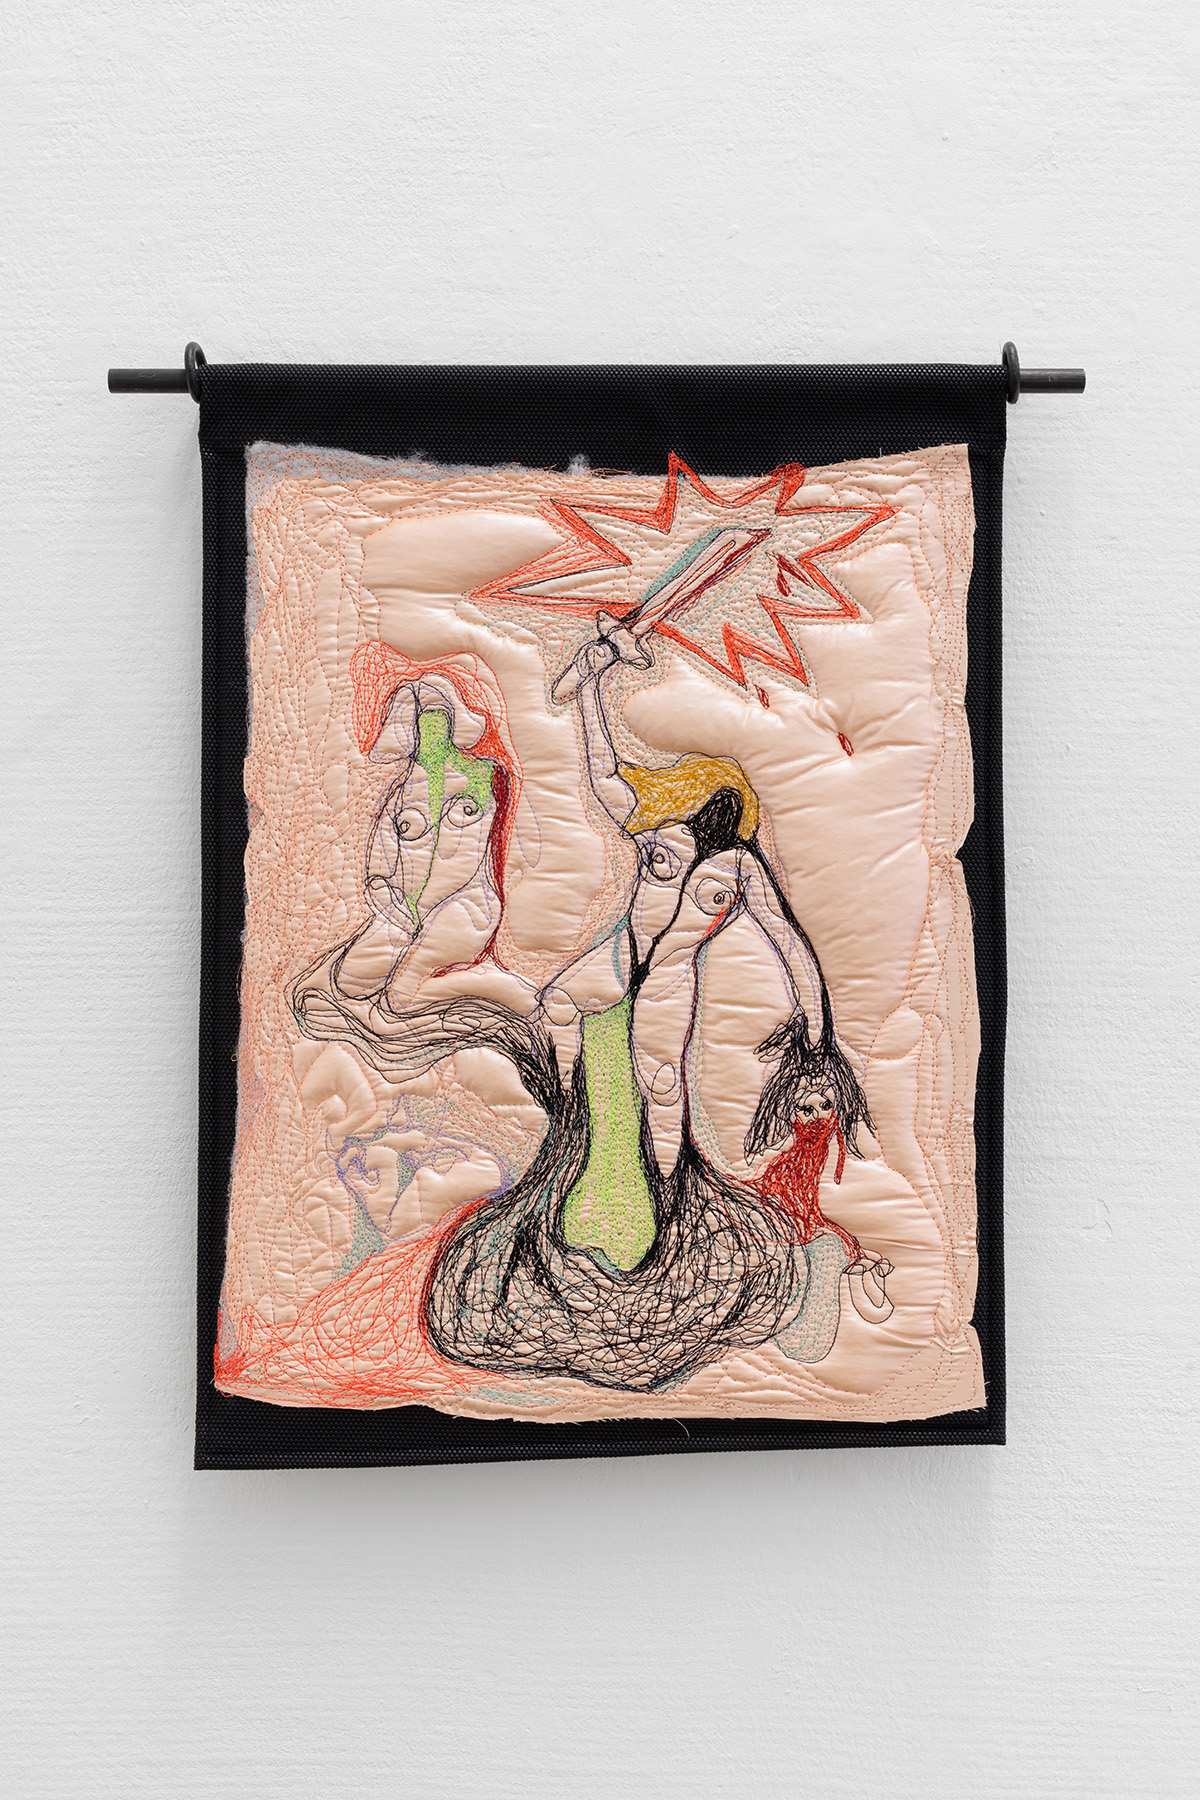 Mary-Audrey Ramirez · Gelangweilte Frauen in einer krassen Szene · 2015 · Garn auf Leinen auf PVC · 54 x 39 cm